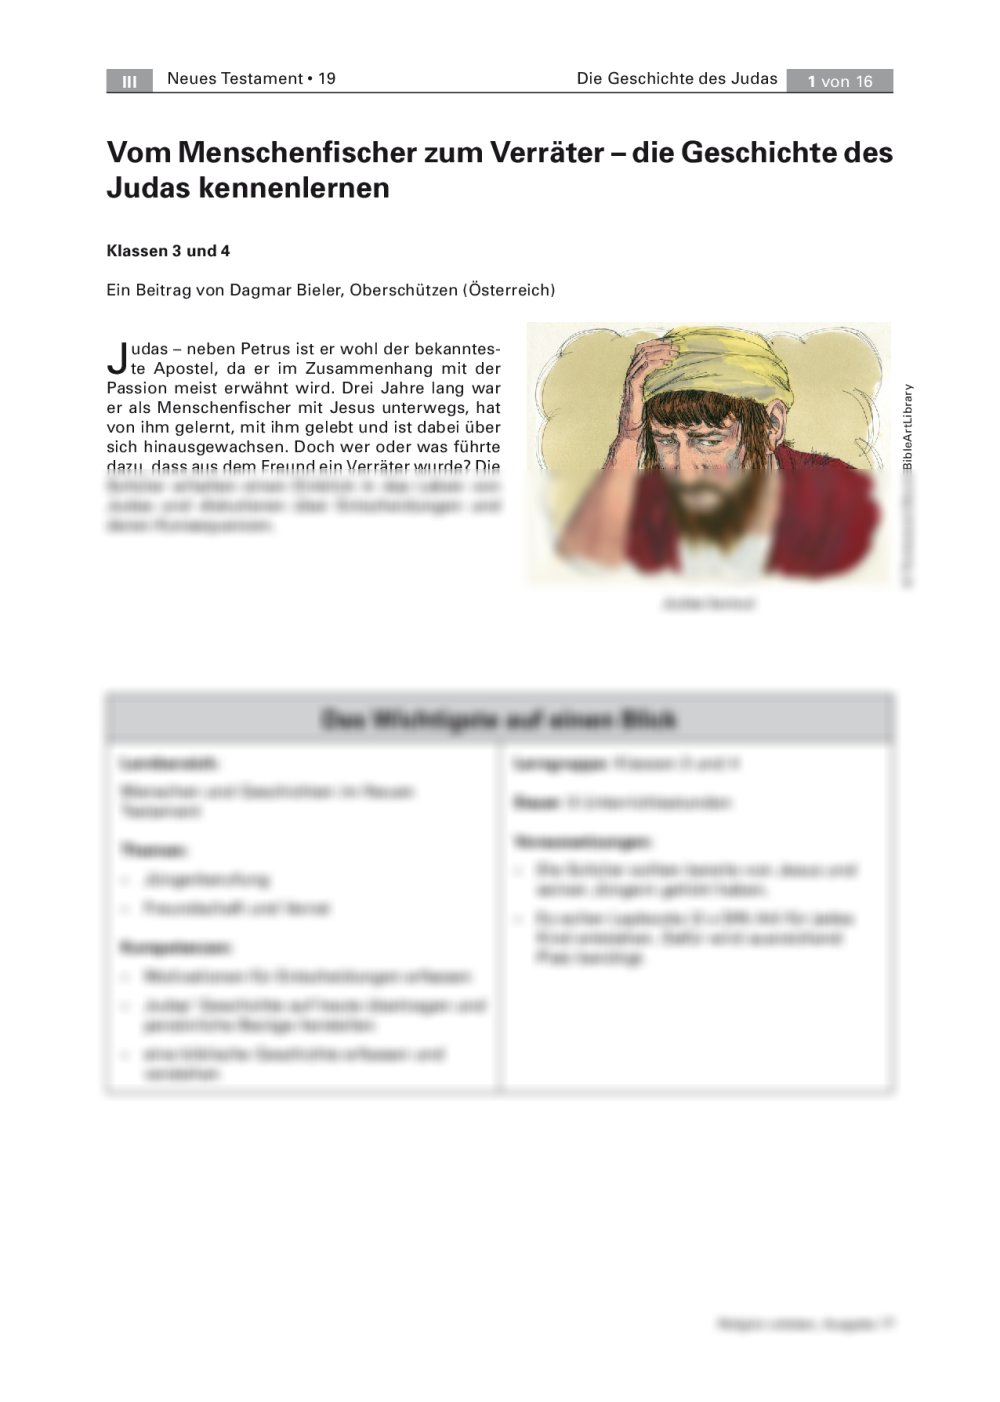 Die Geschichte von Judas kennenlernen - Seite 1